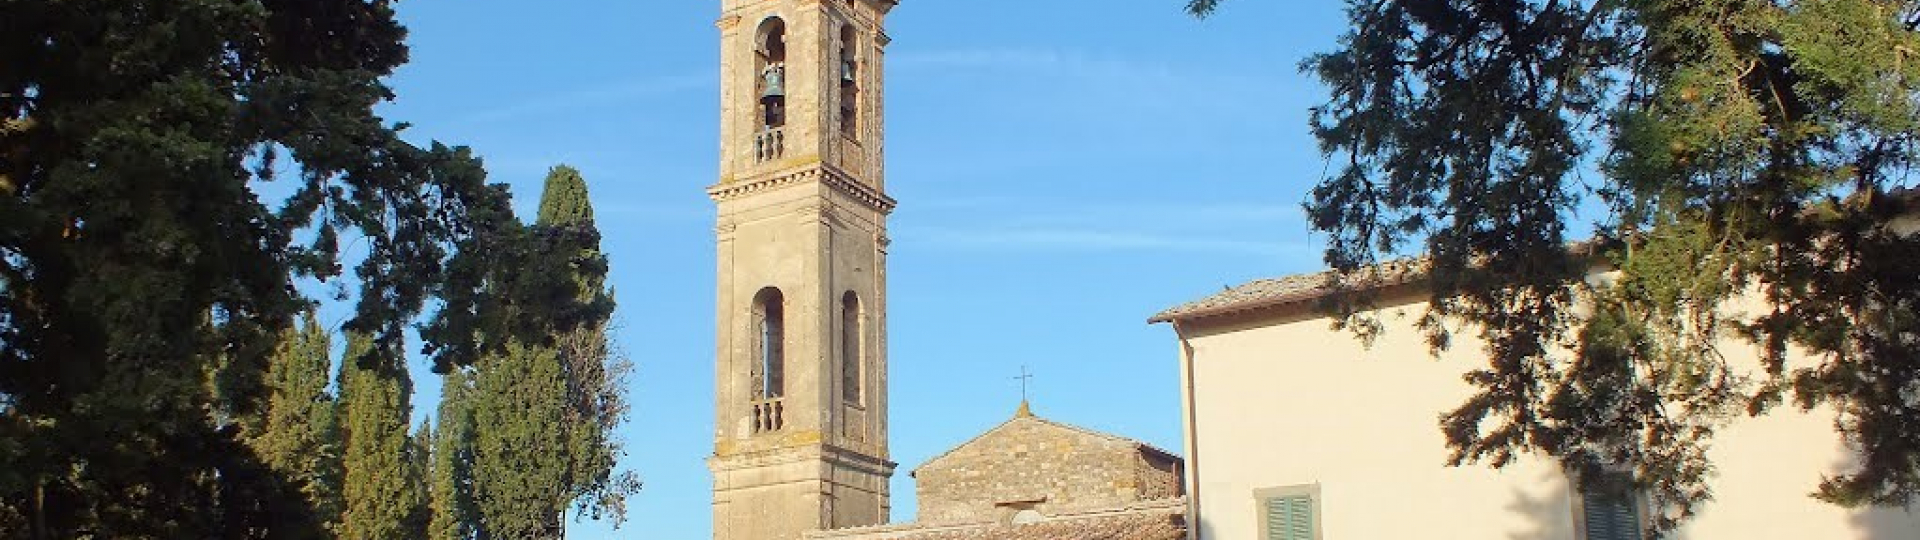 Pieve di San Pietro in Bossolo